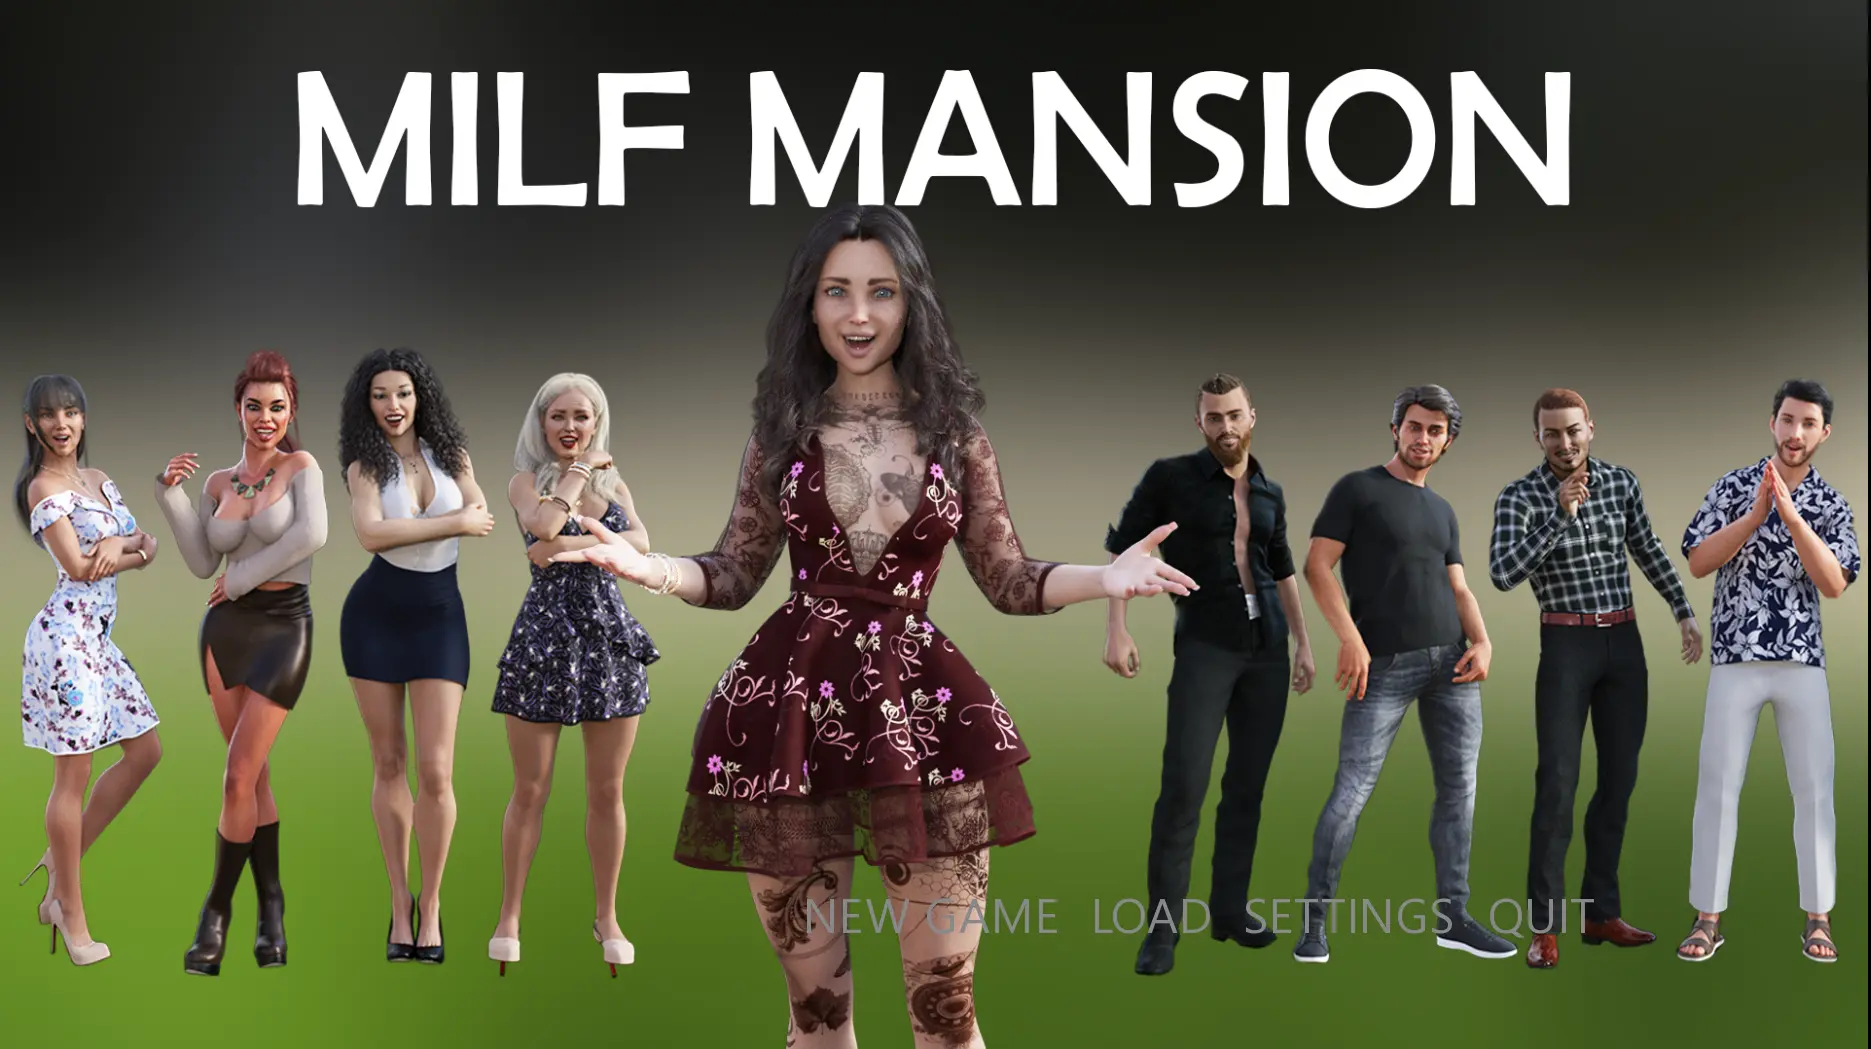 MILF Mansion main image